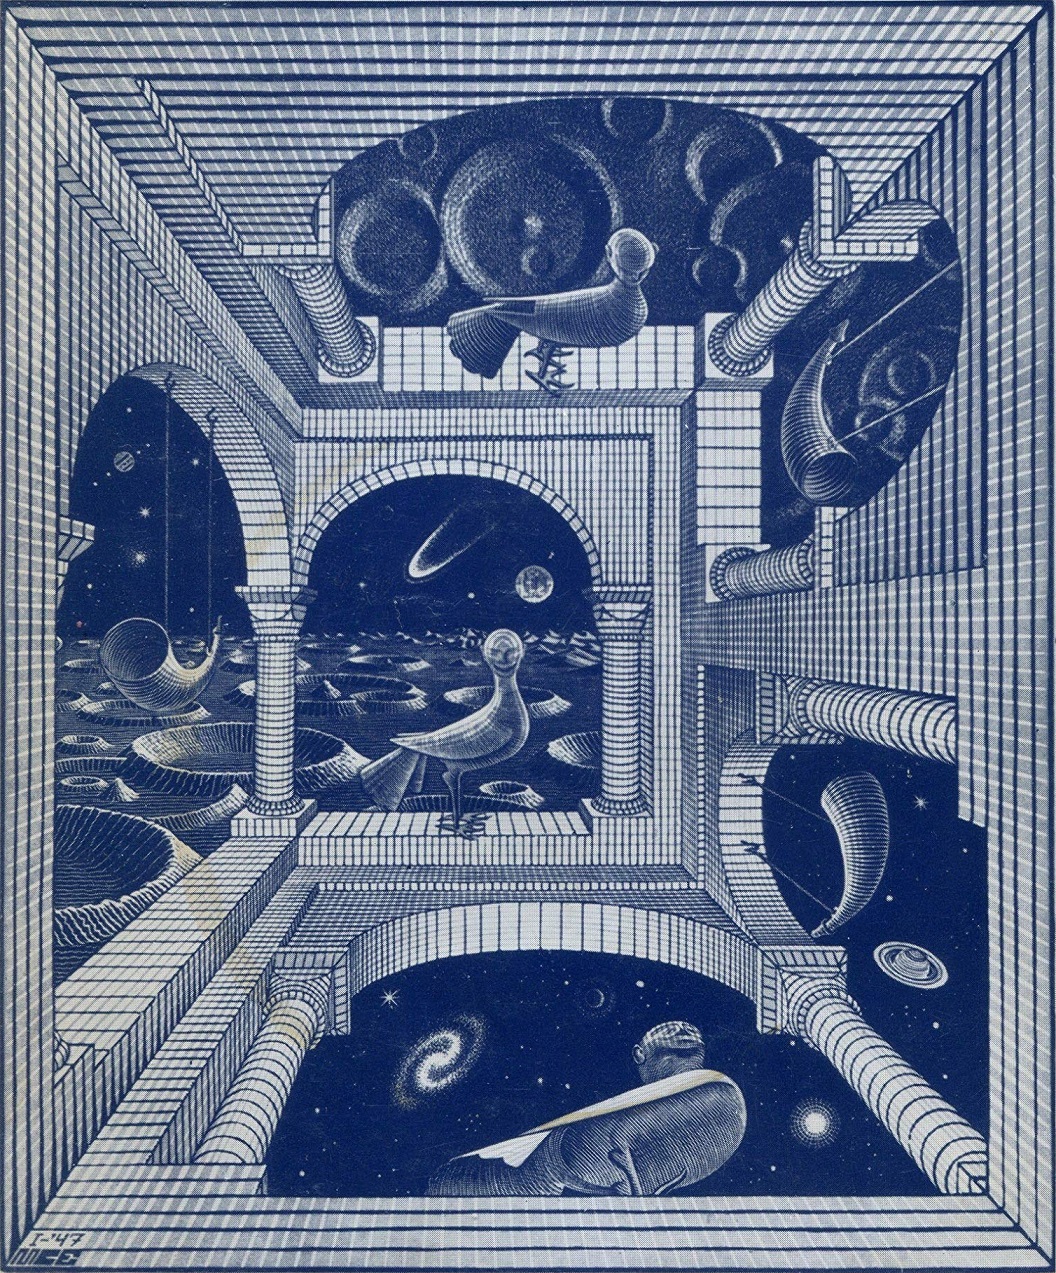 Immagine di copertina de “Le cosmicomiche”, Calvino, (1° ed., Einaudi 1965)